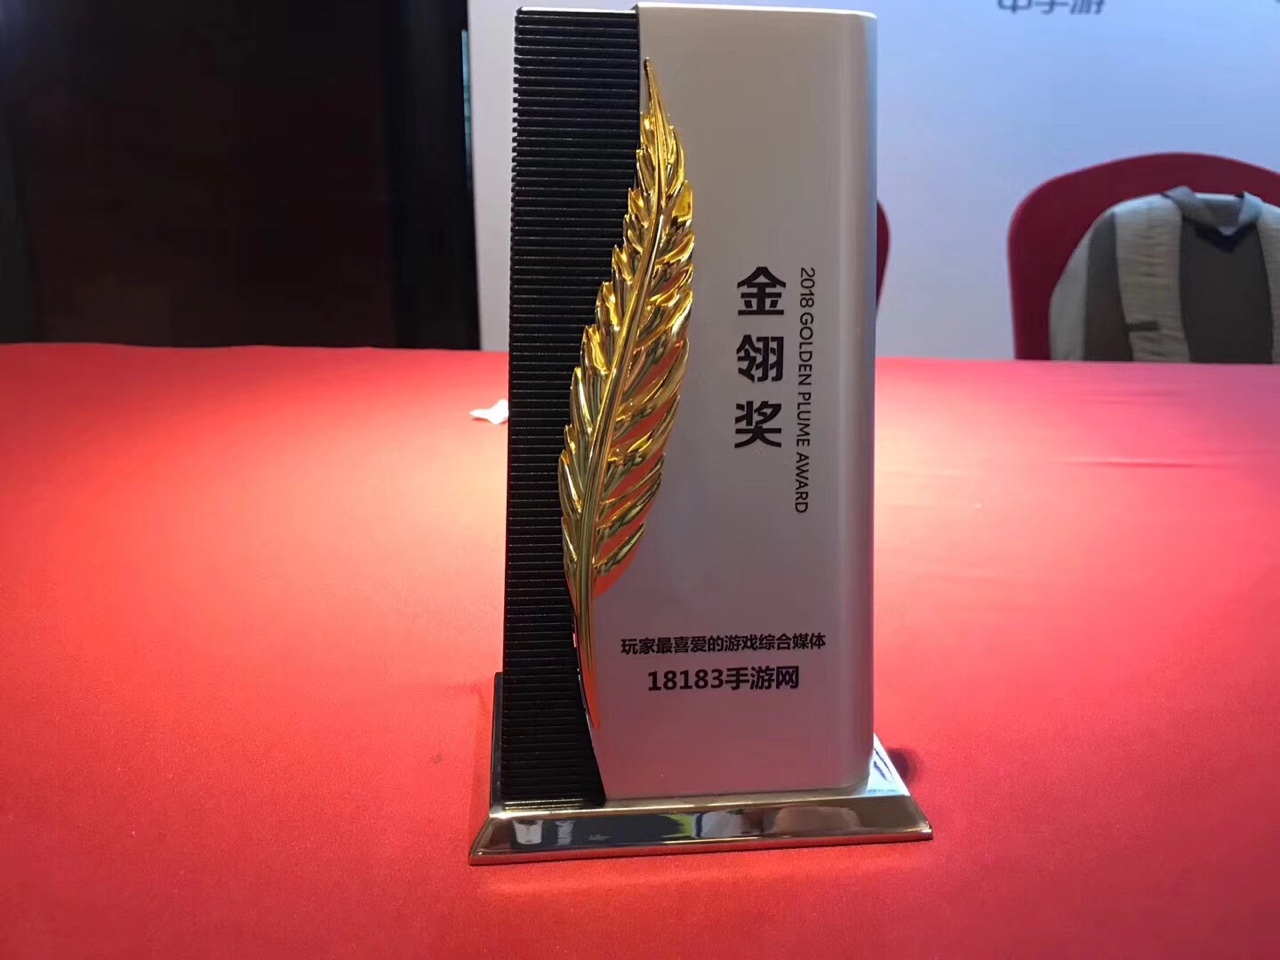 中国游戏行业奥斯卡 2018金翎奖颁奖典礼举办 